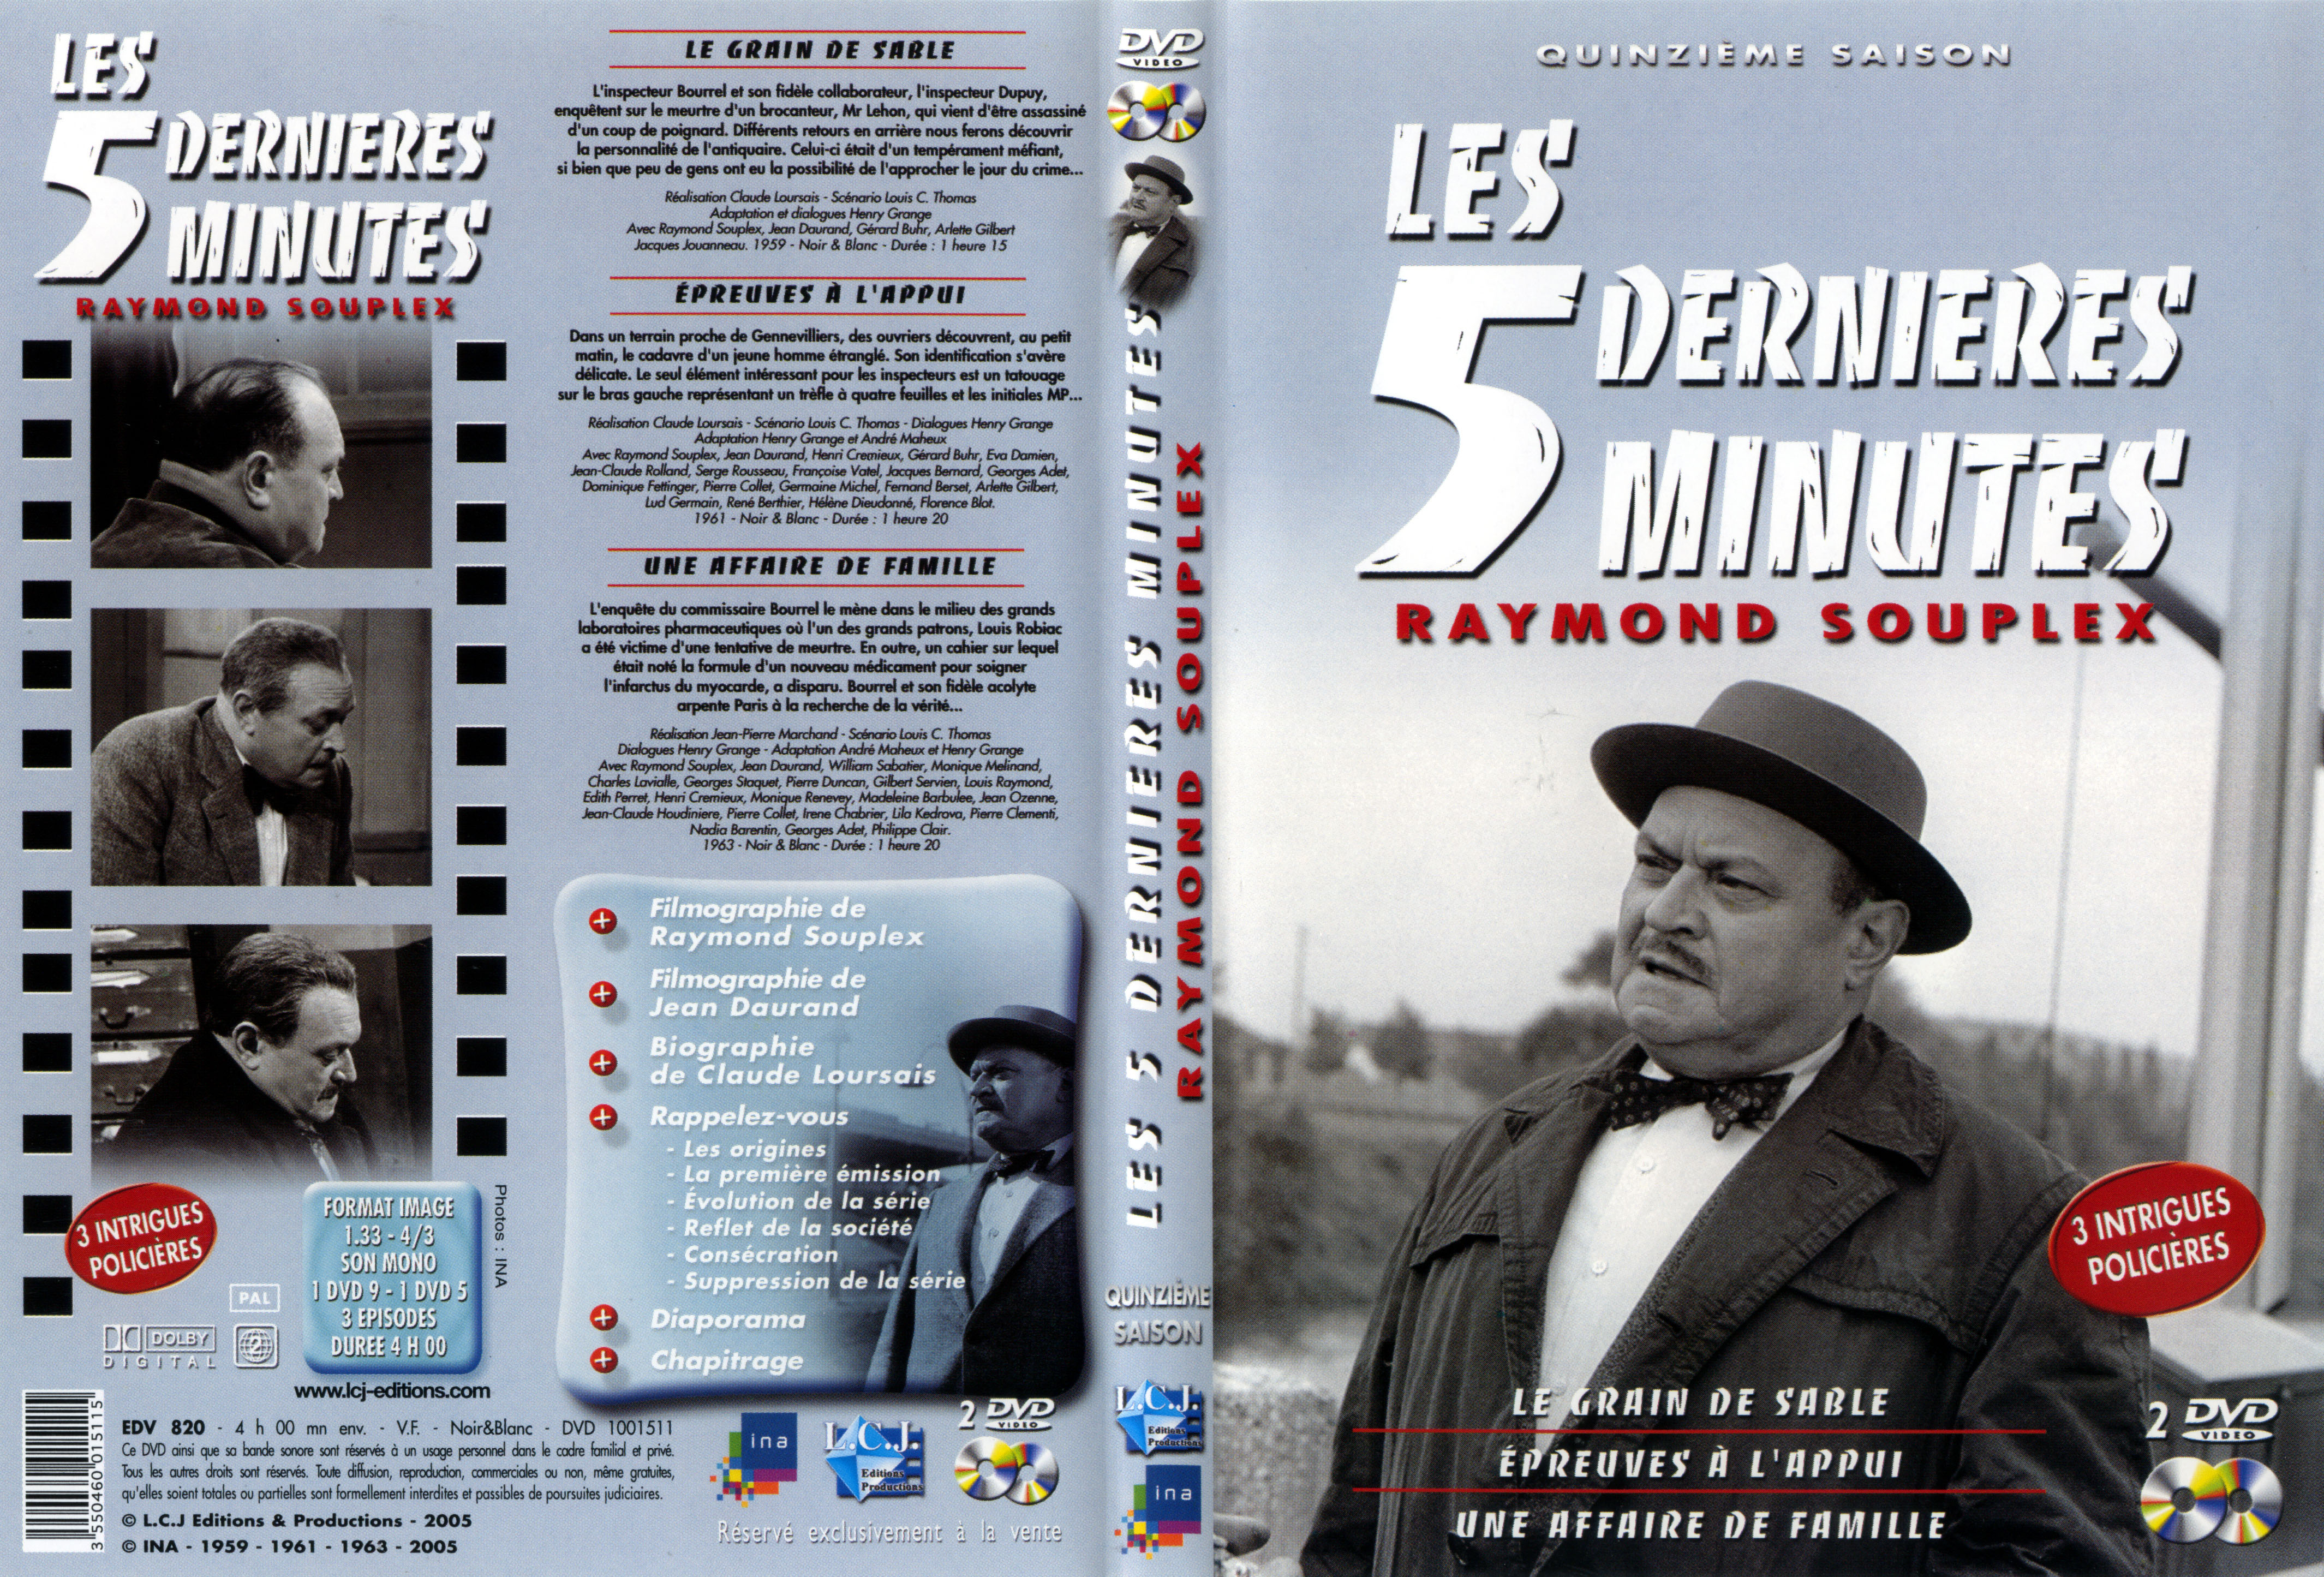 Jaquette DVD Les 5 dernires minutes Saison 15